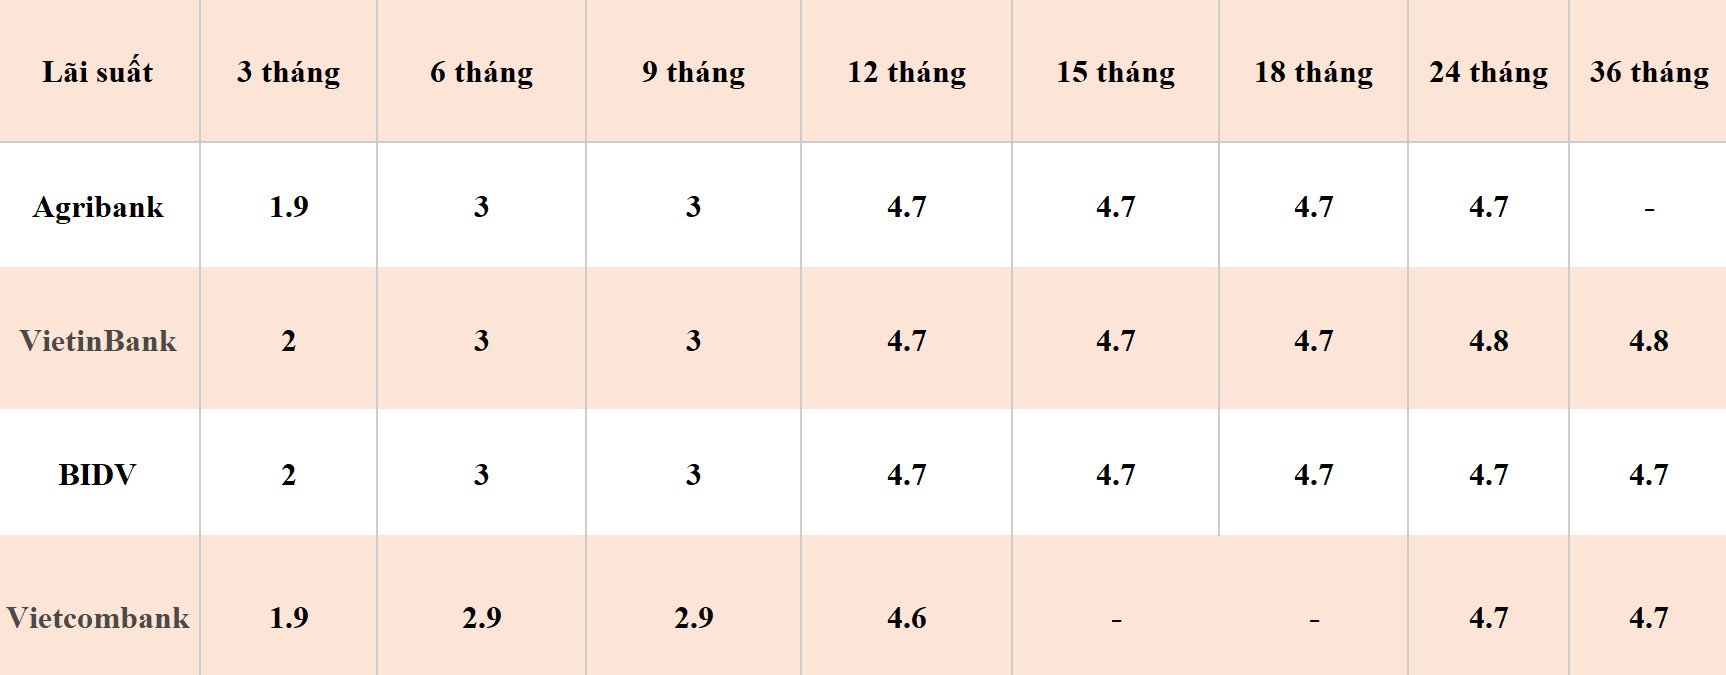 Bảng so sánh lãi suất các kỳ hạn tại Vietcombank, Agribank, VietinBank và BIDV. Số liệu ghi nhận đầu giờ sáng ngày 8.4.2024. Đơn vị tính: %/năm. Bảng: Khương Duy  